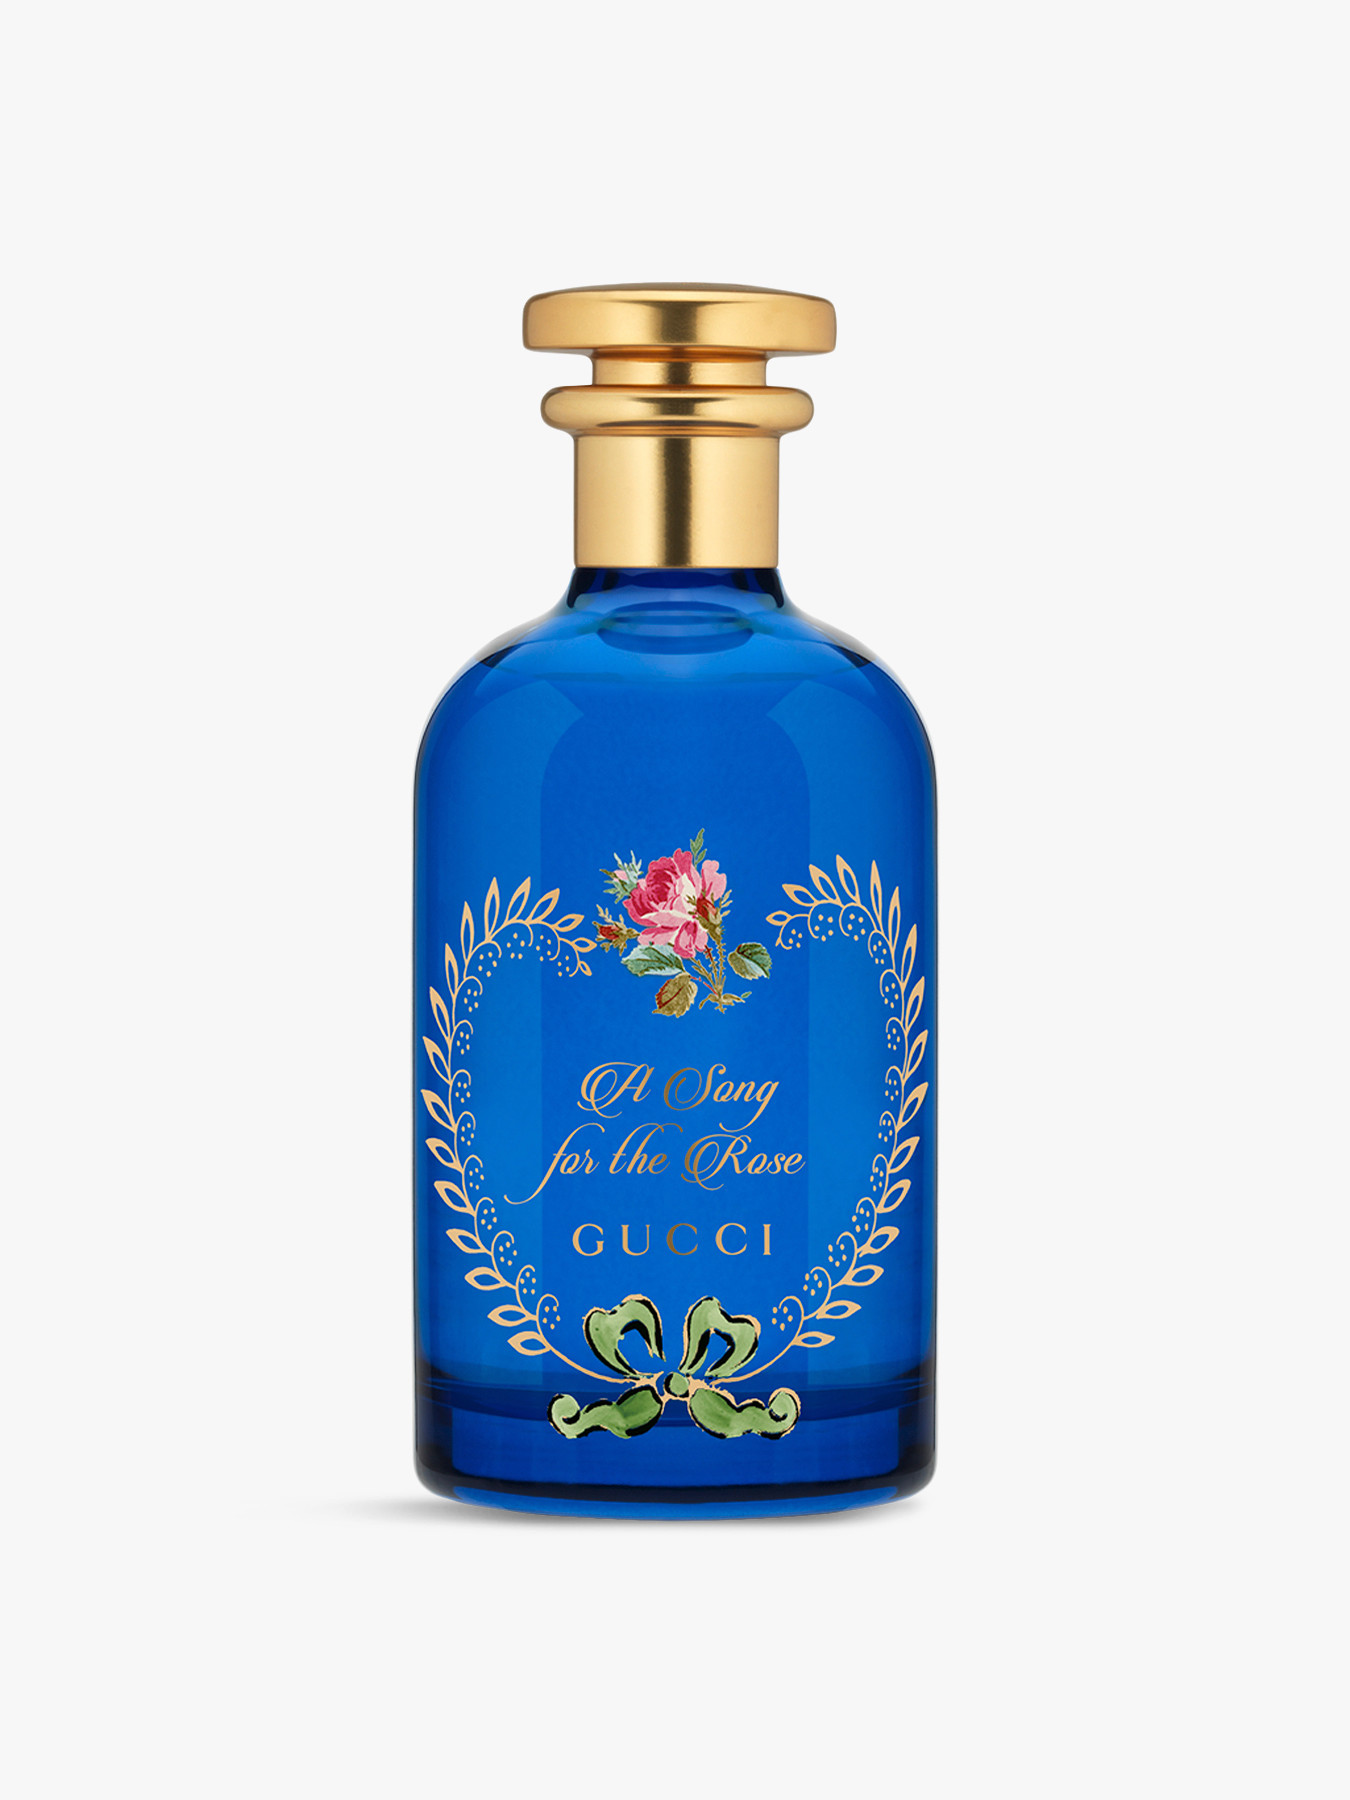 Gucci The Alchemist's Garden A Song For The Rose Eau De Parfum 100ml